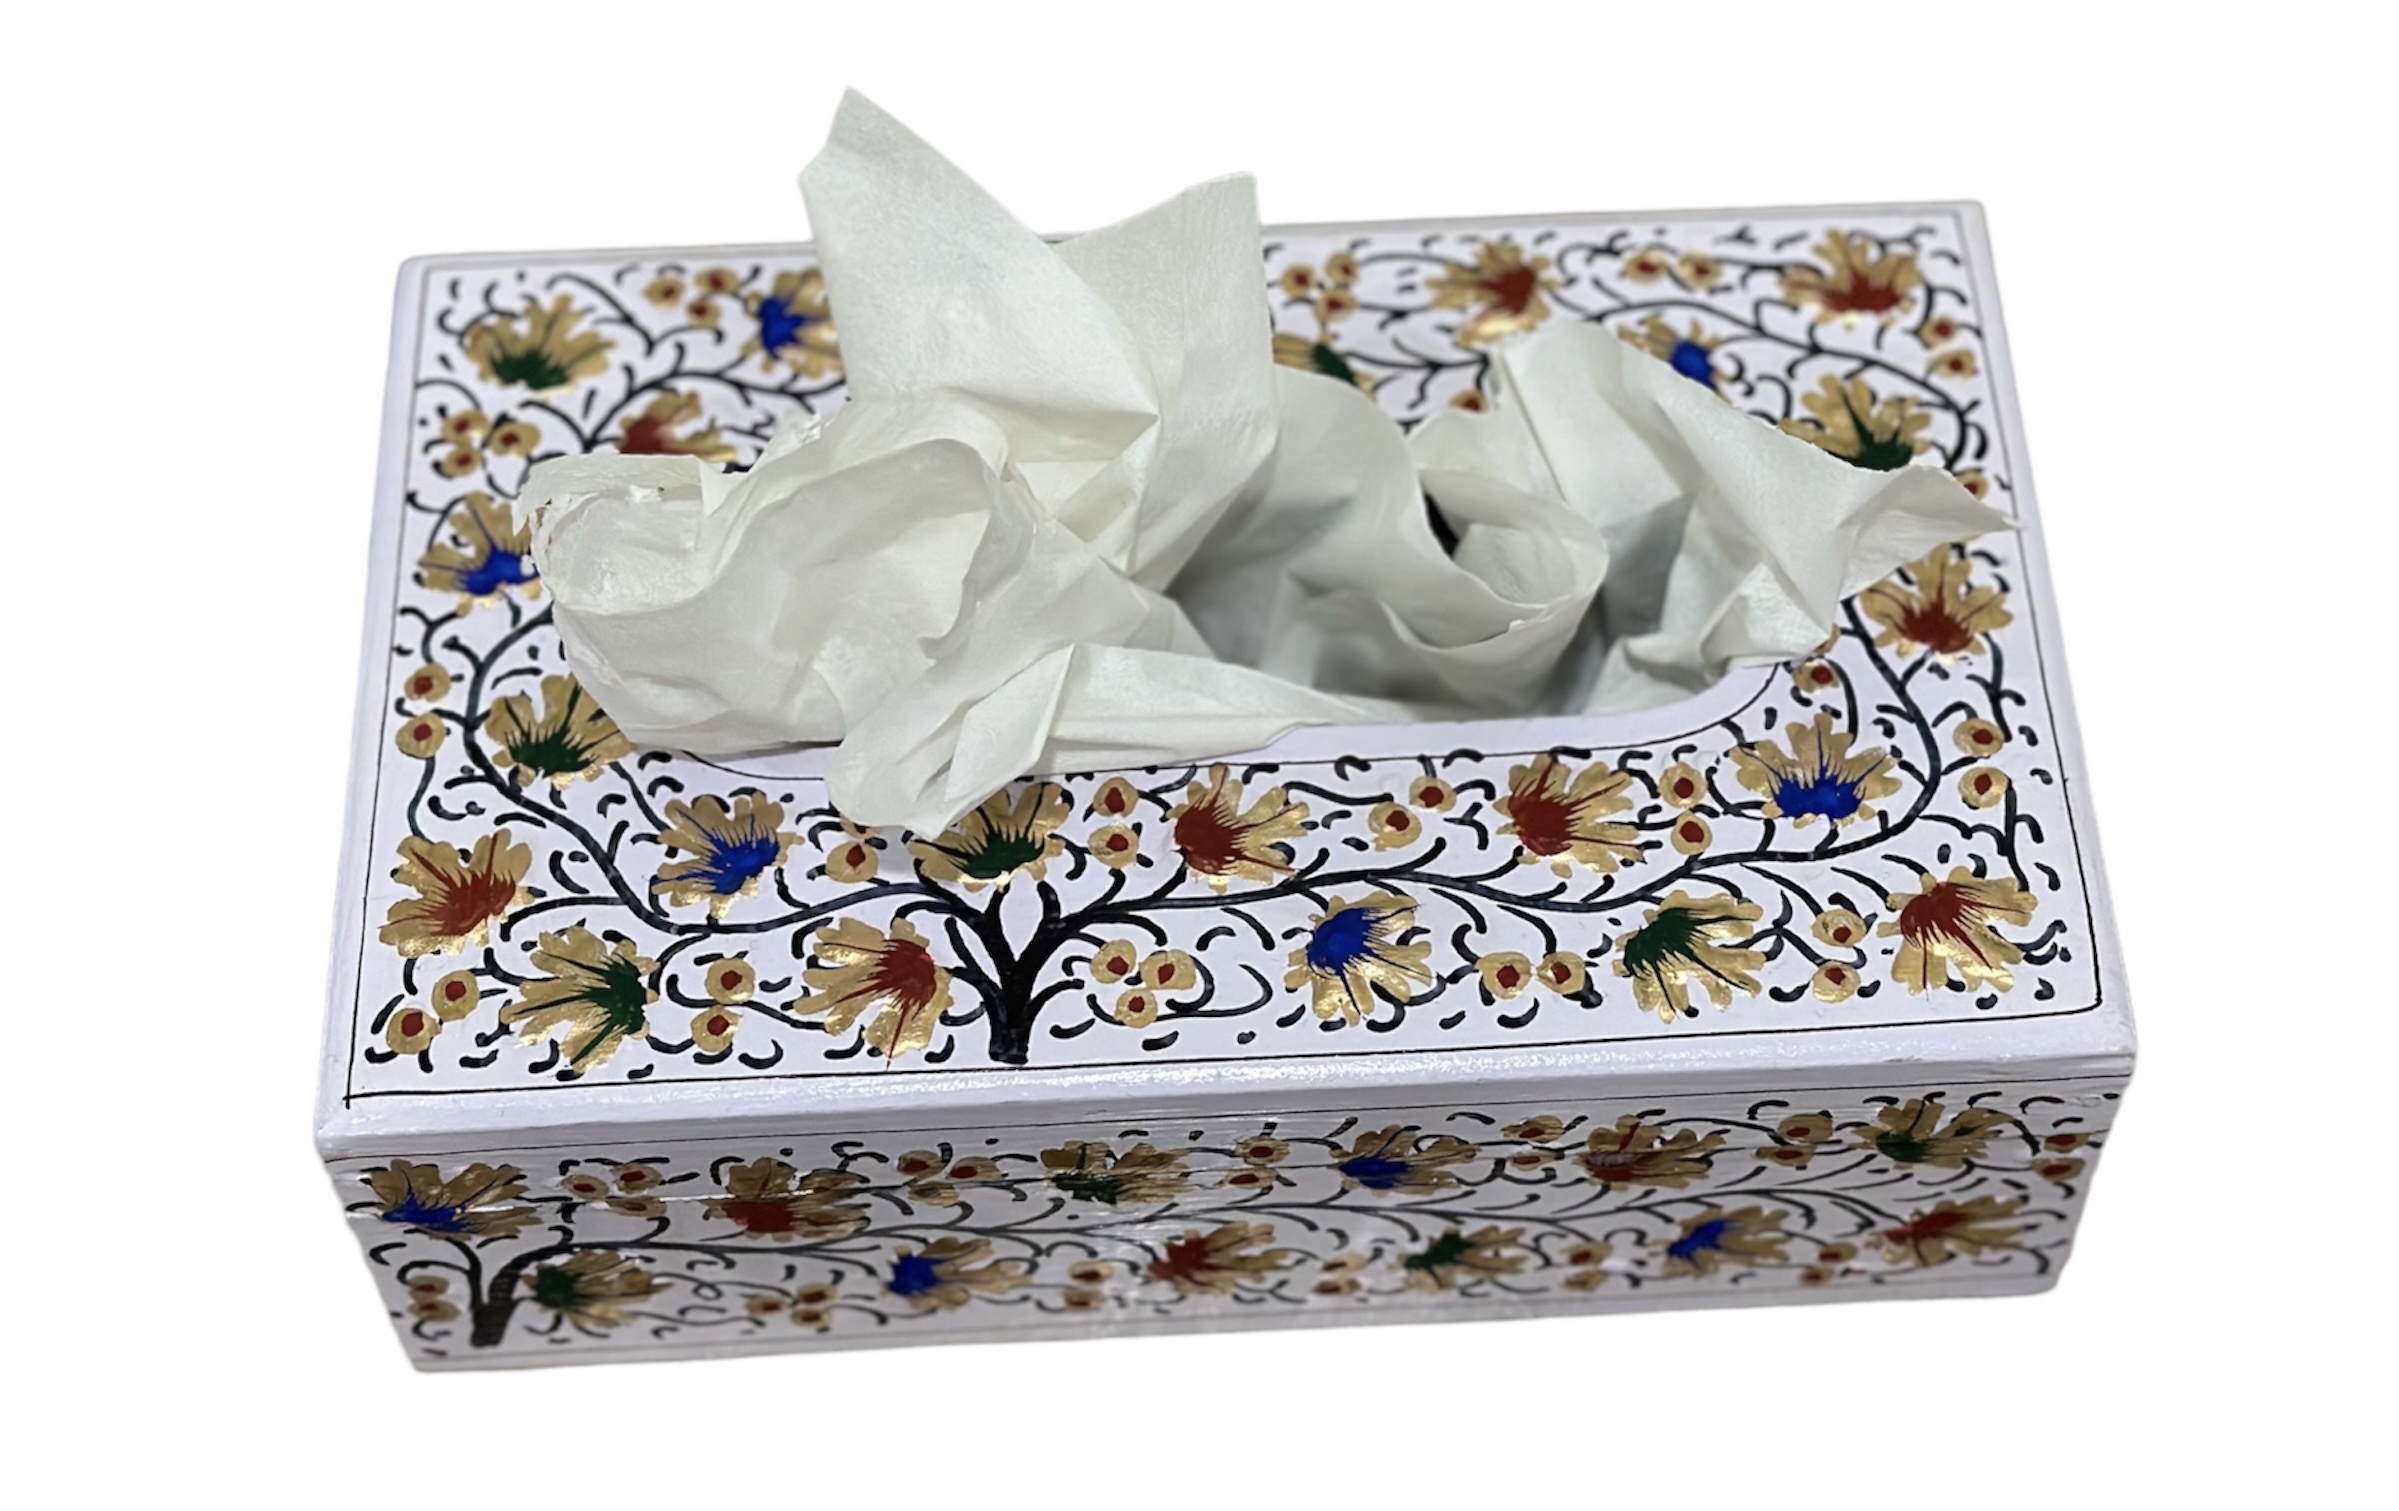 Paper mache tissue box, hand painted tissue holder, colorful kashmiri paper mache box